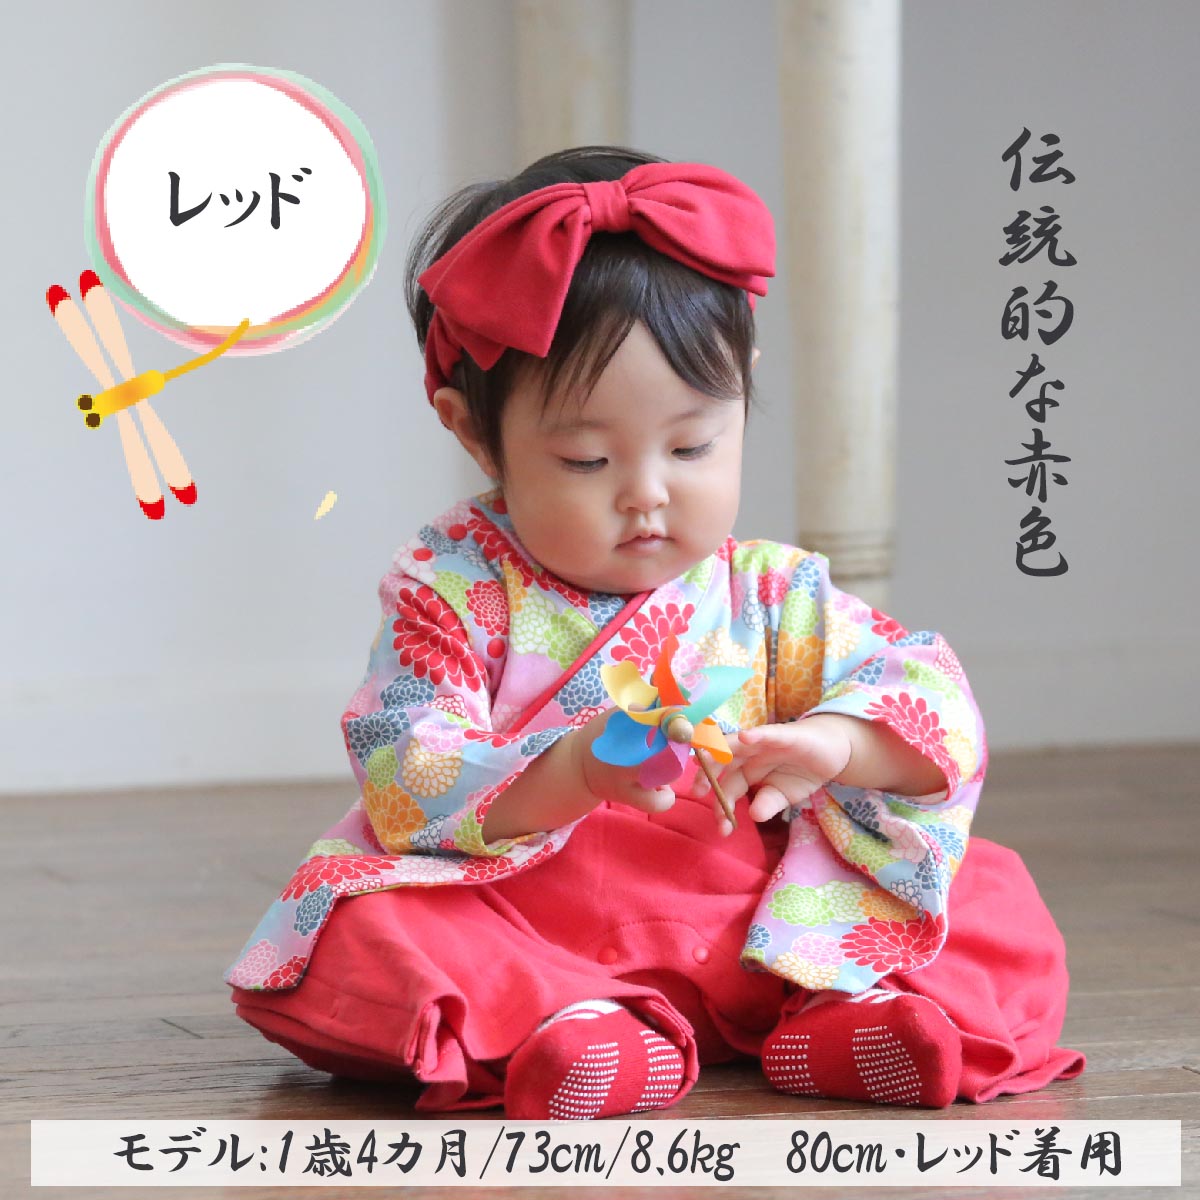 特価 赤ちゃん着物セット 初節句 お食い初め asakusa.sub.jp